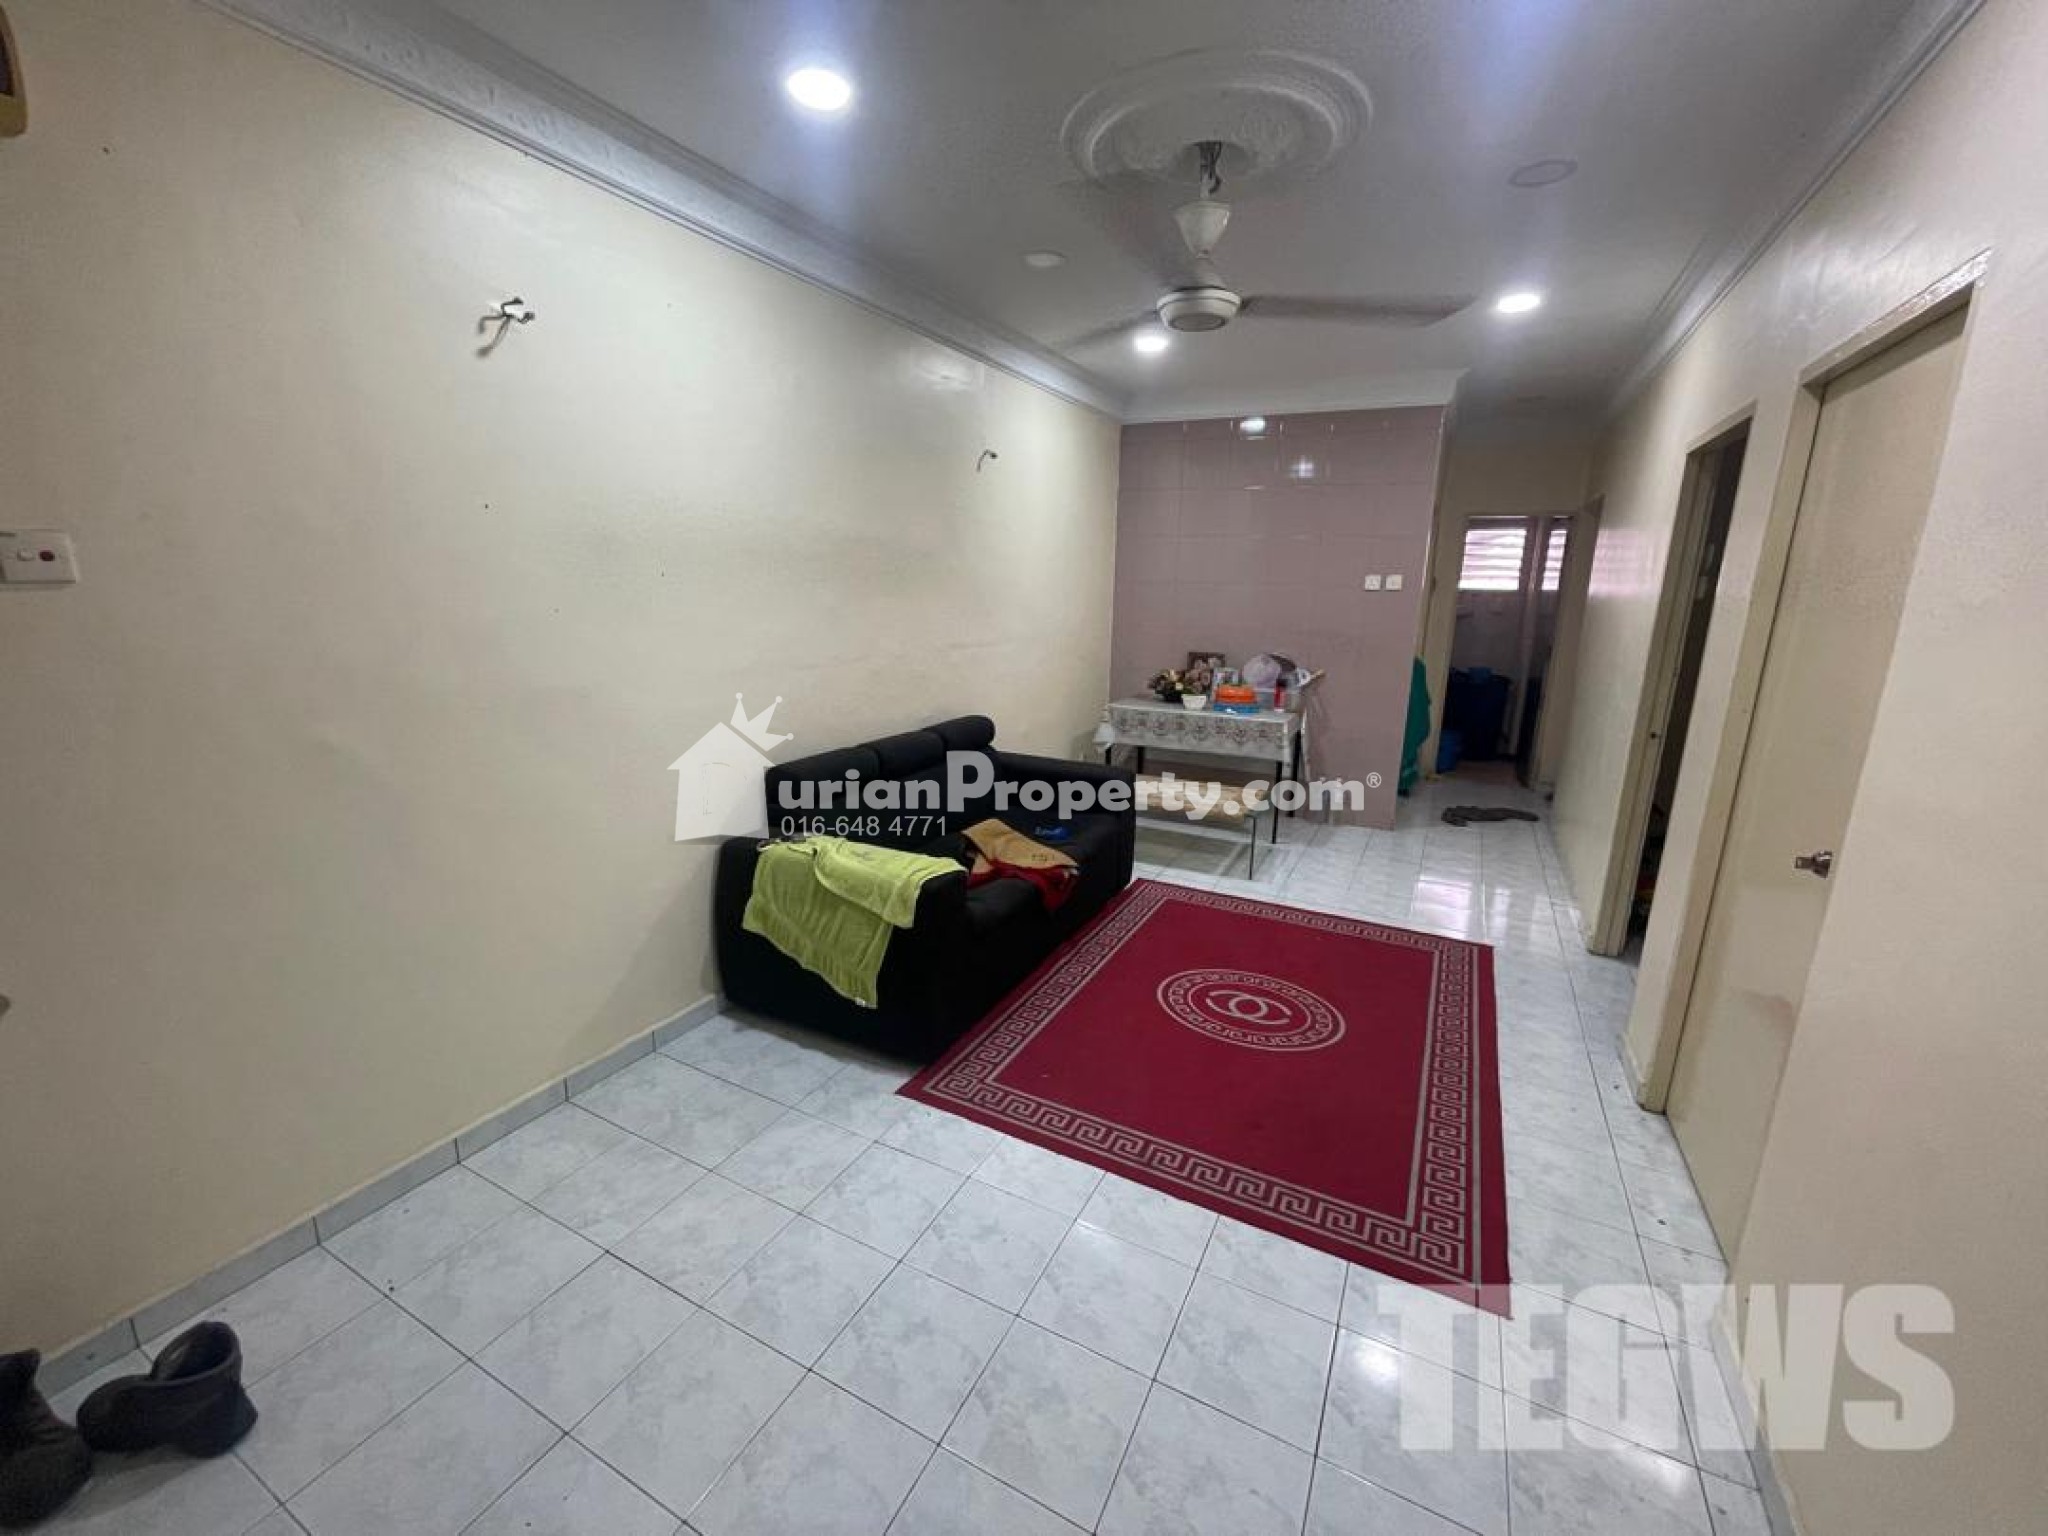 Apartment For Rent at Pangsapuri Pelangi Indah